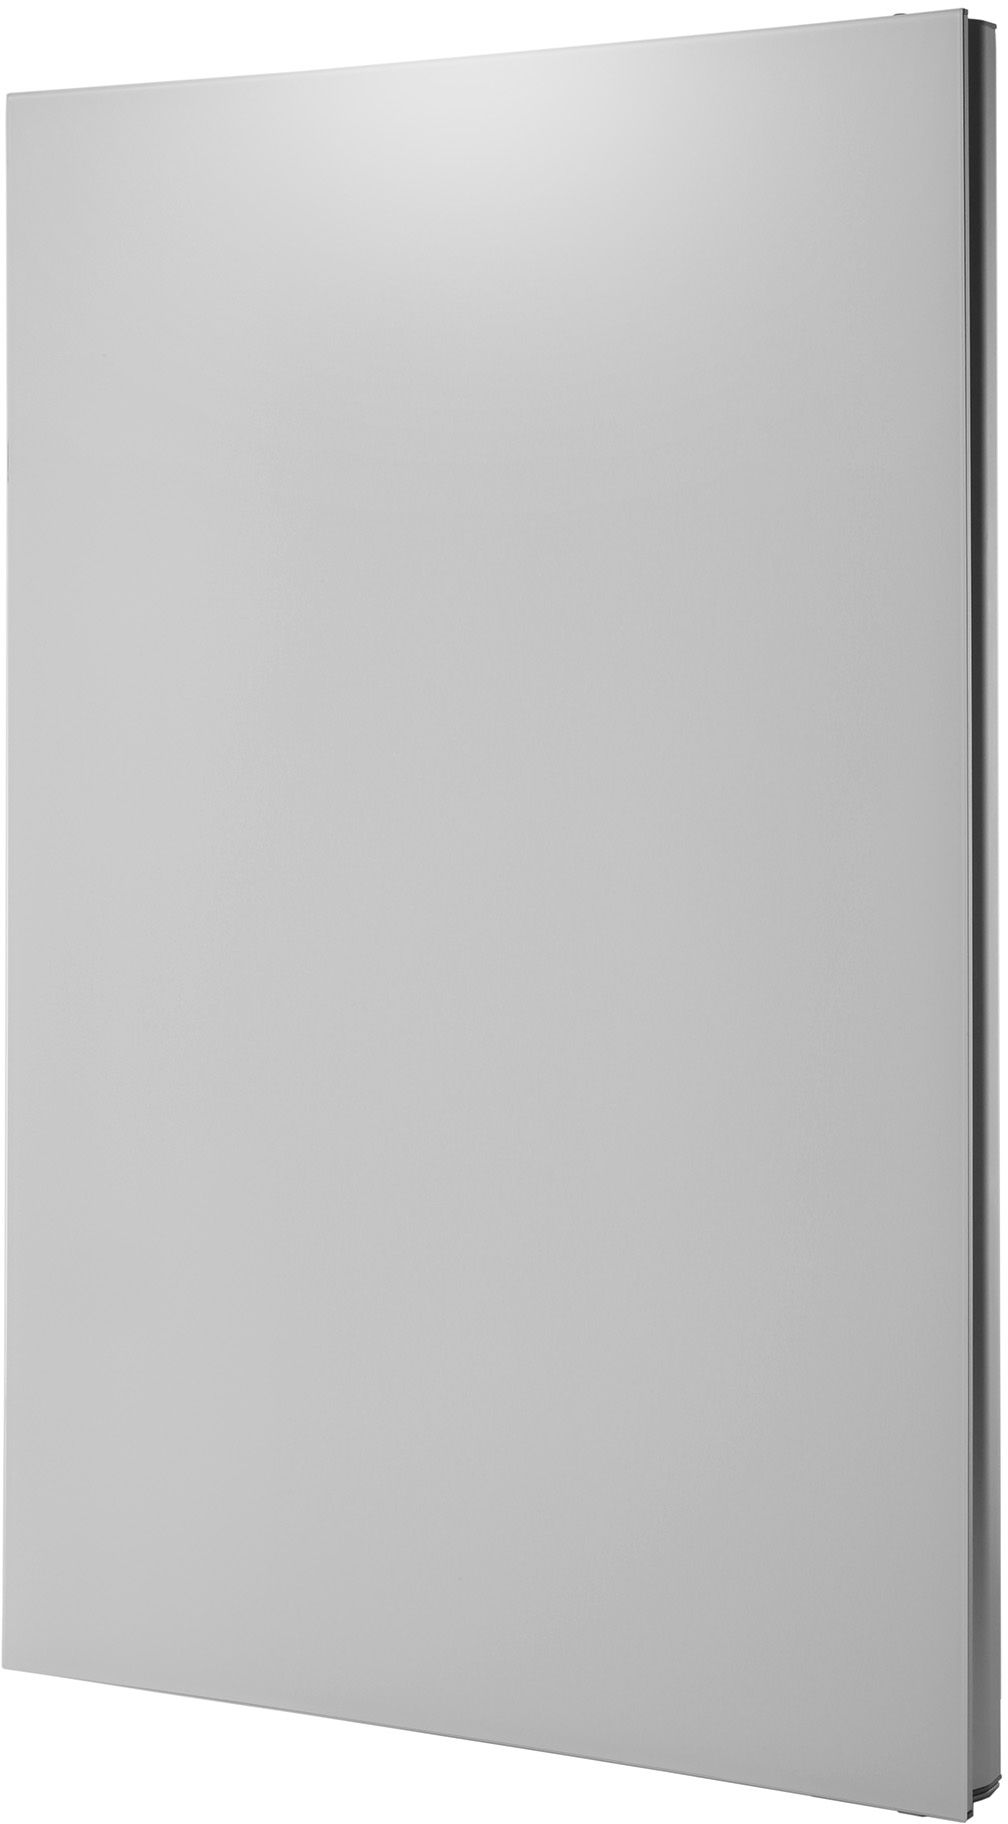 Дверь морозильной камеры для холодильника, белая, для KGN39..